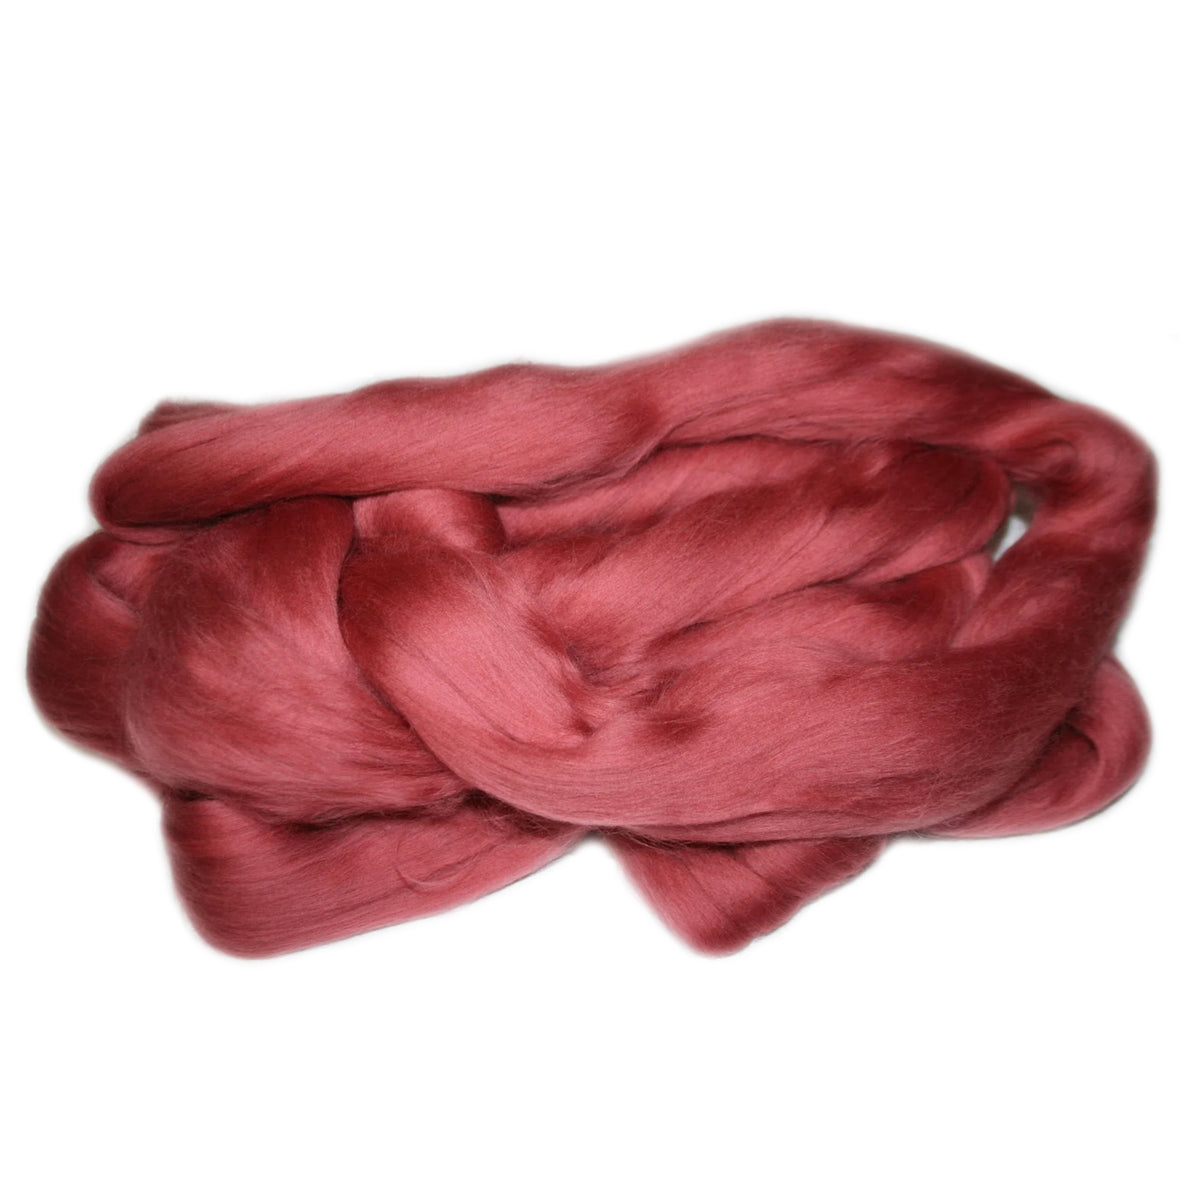 Merino Wool Top Rhubarb 3950g